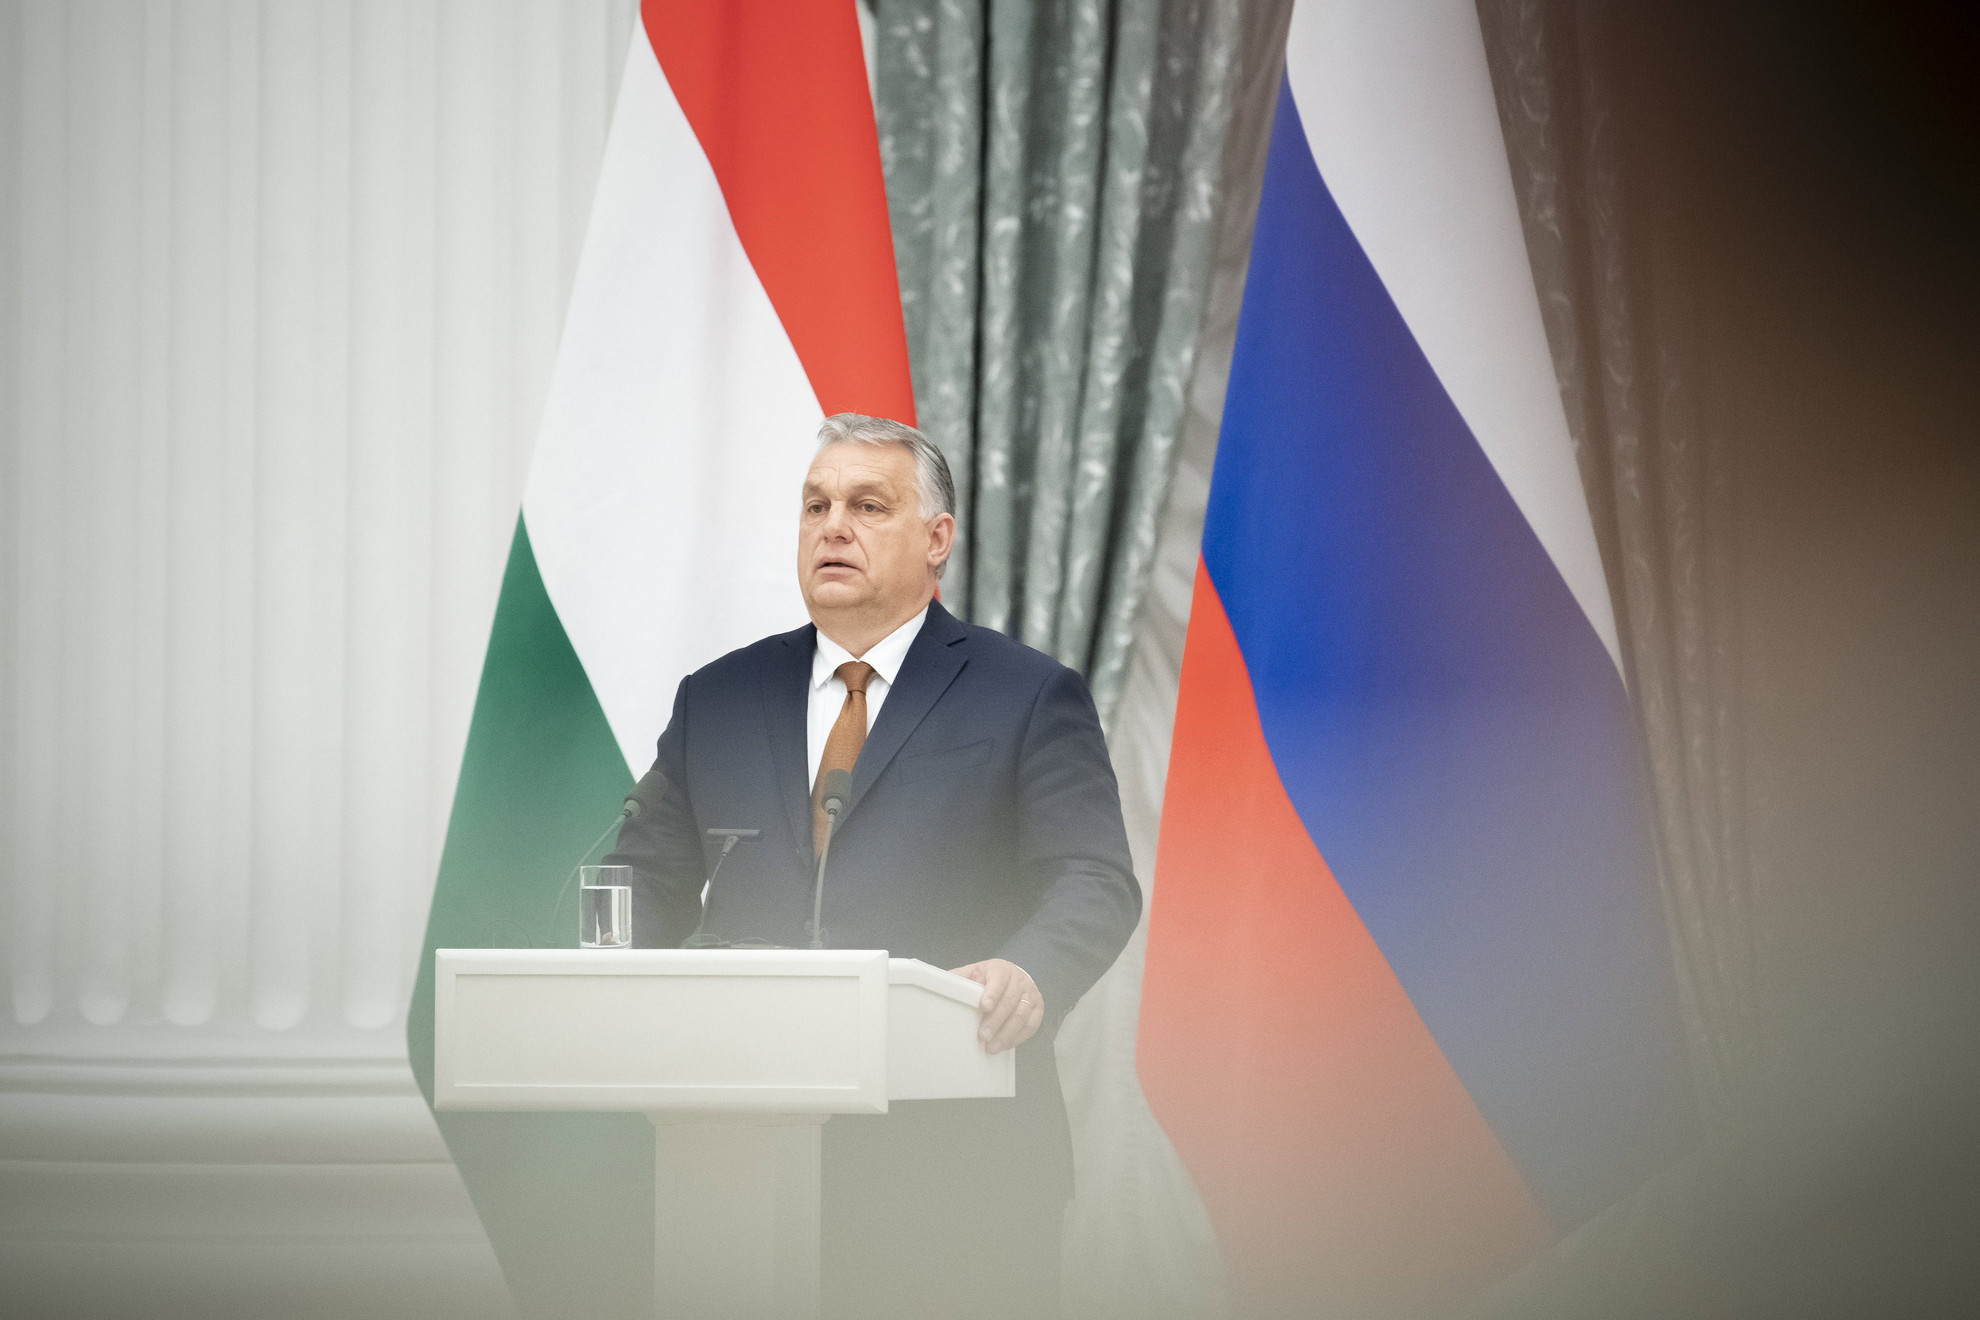 A Miniszterelnöki Sajtóiroda által közreadott képen Orbán Viktor kormányfő a Vlagyimir Putyin orosz elnökkel tárgyalásuk után tartott sajtótájékoztatón Moszkvában